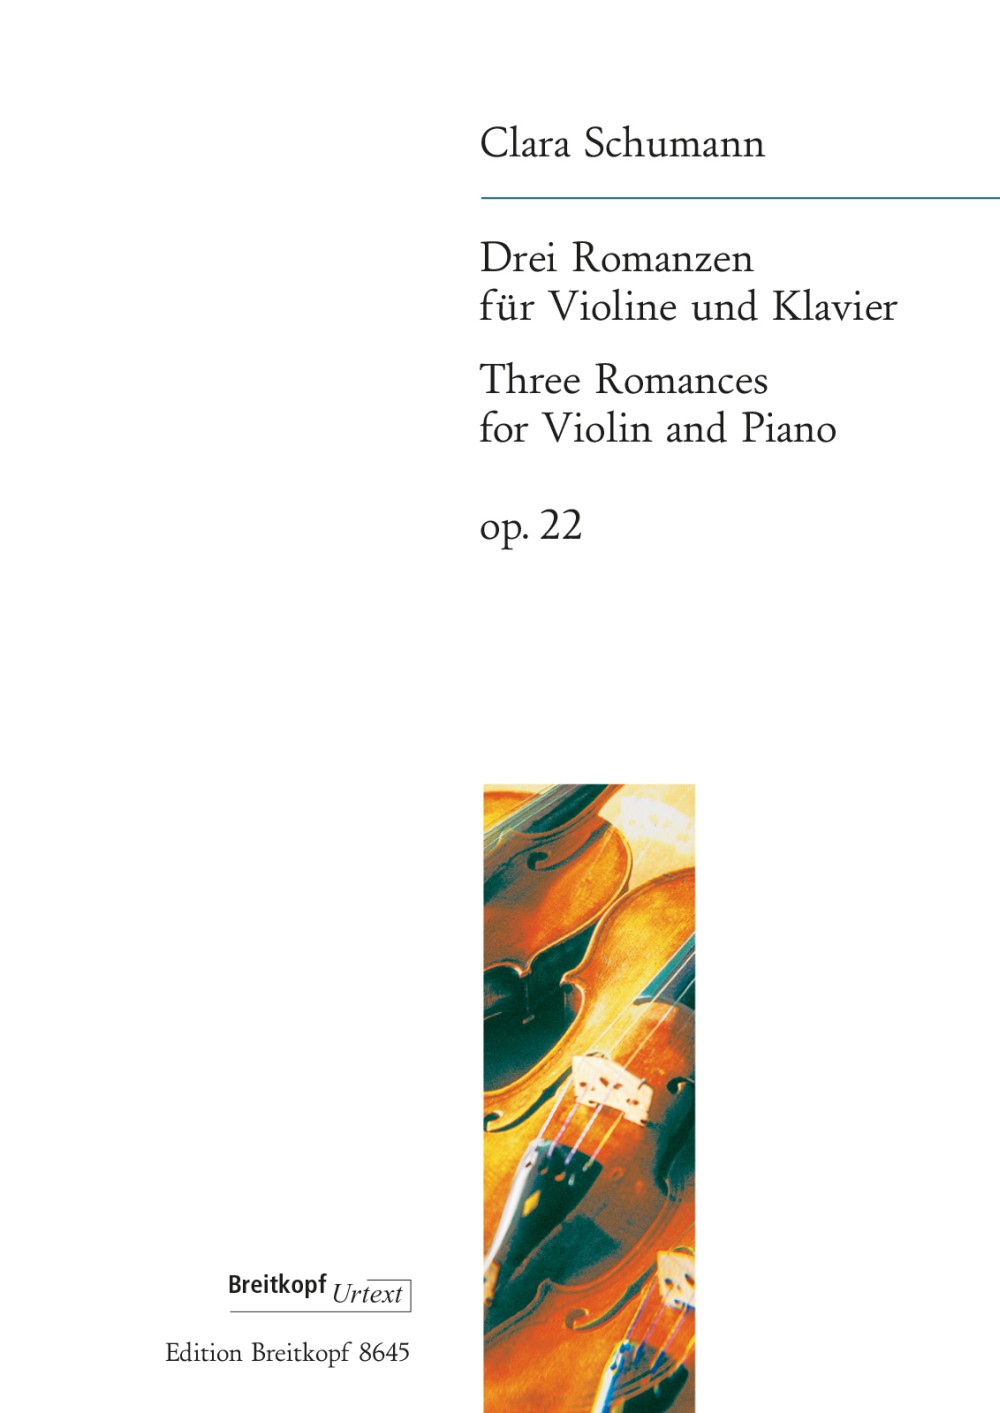 Clara Schumann 3 Romances, Op. 22